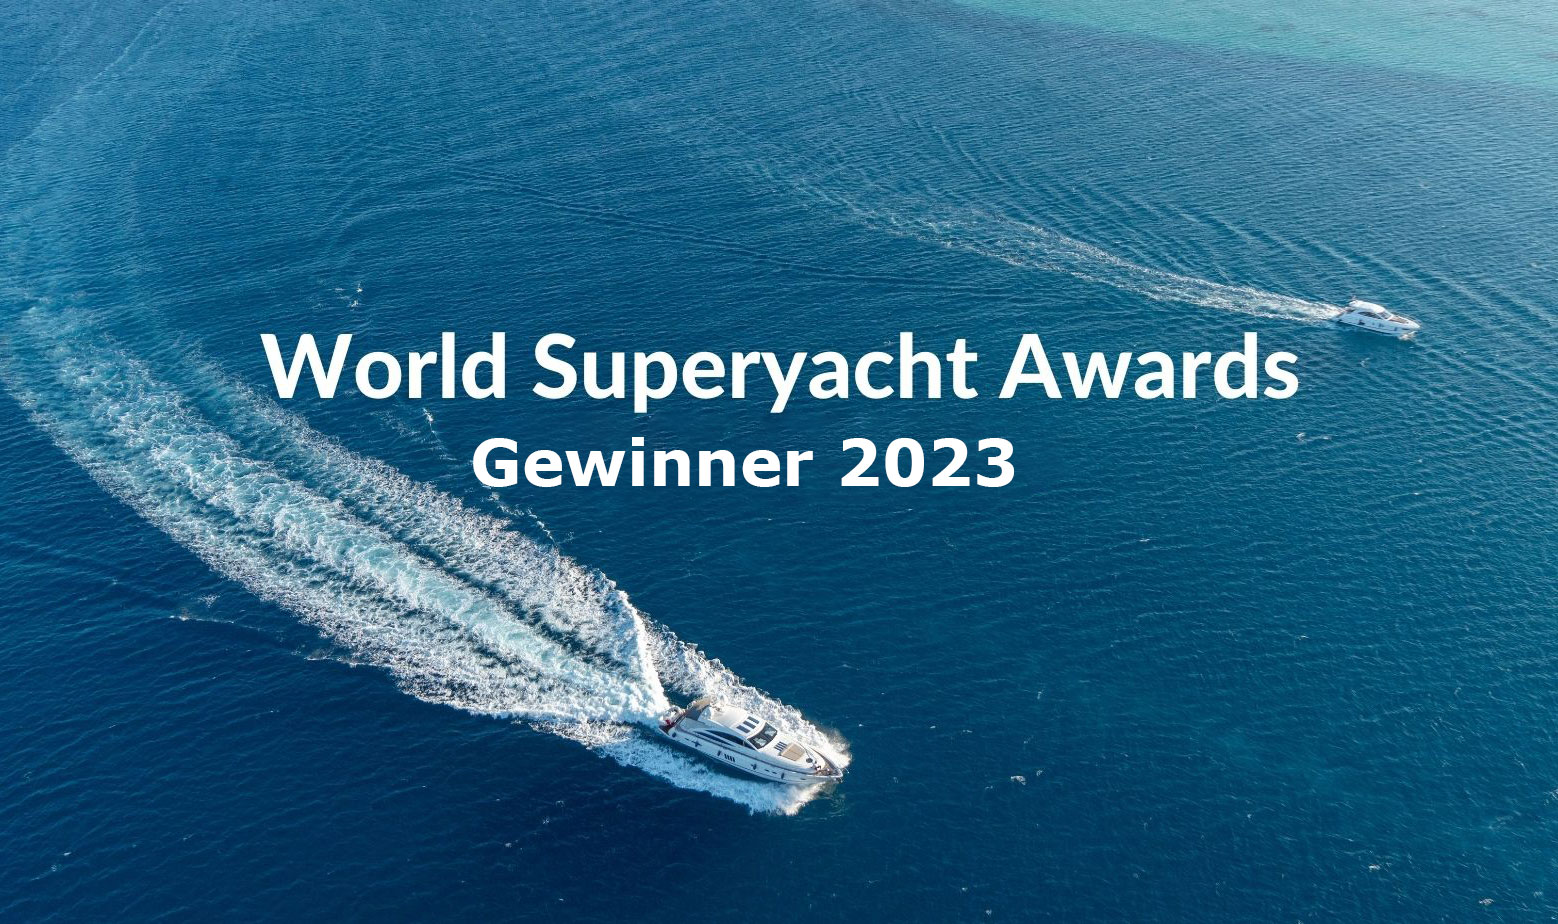 Gewinner der World Superyacht Awards 2023 stehen fest